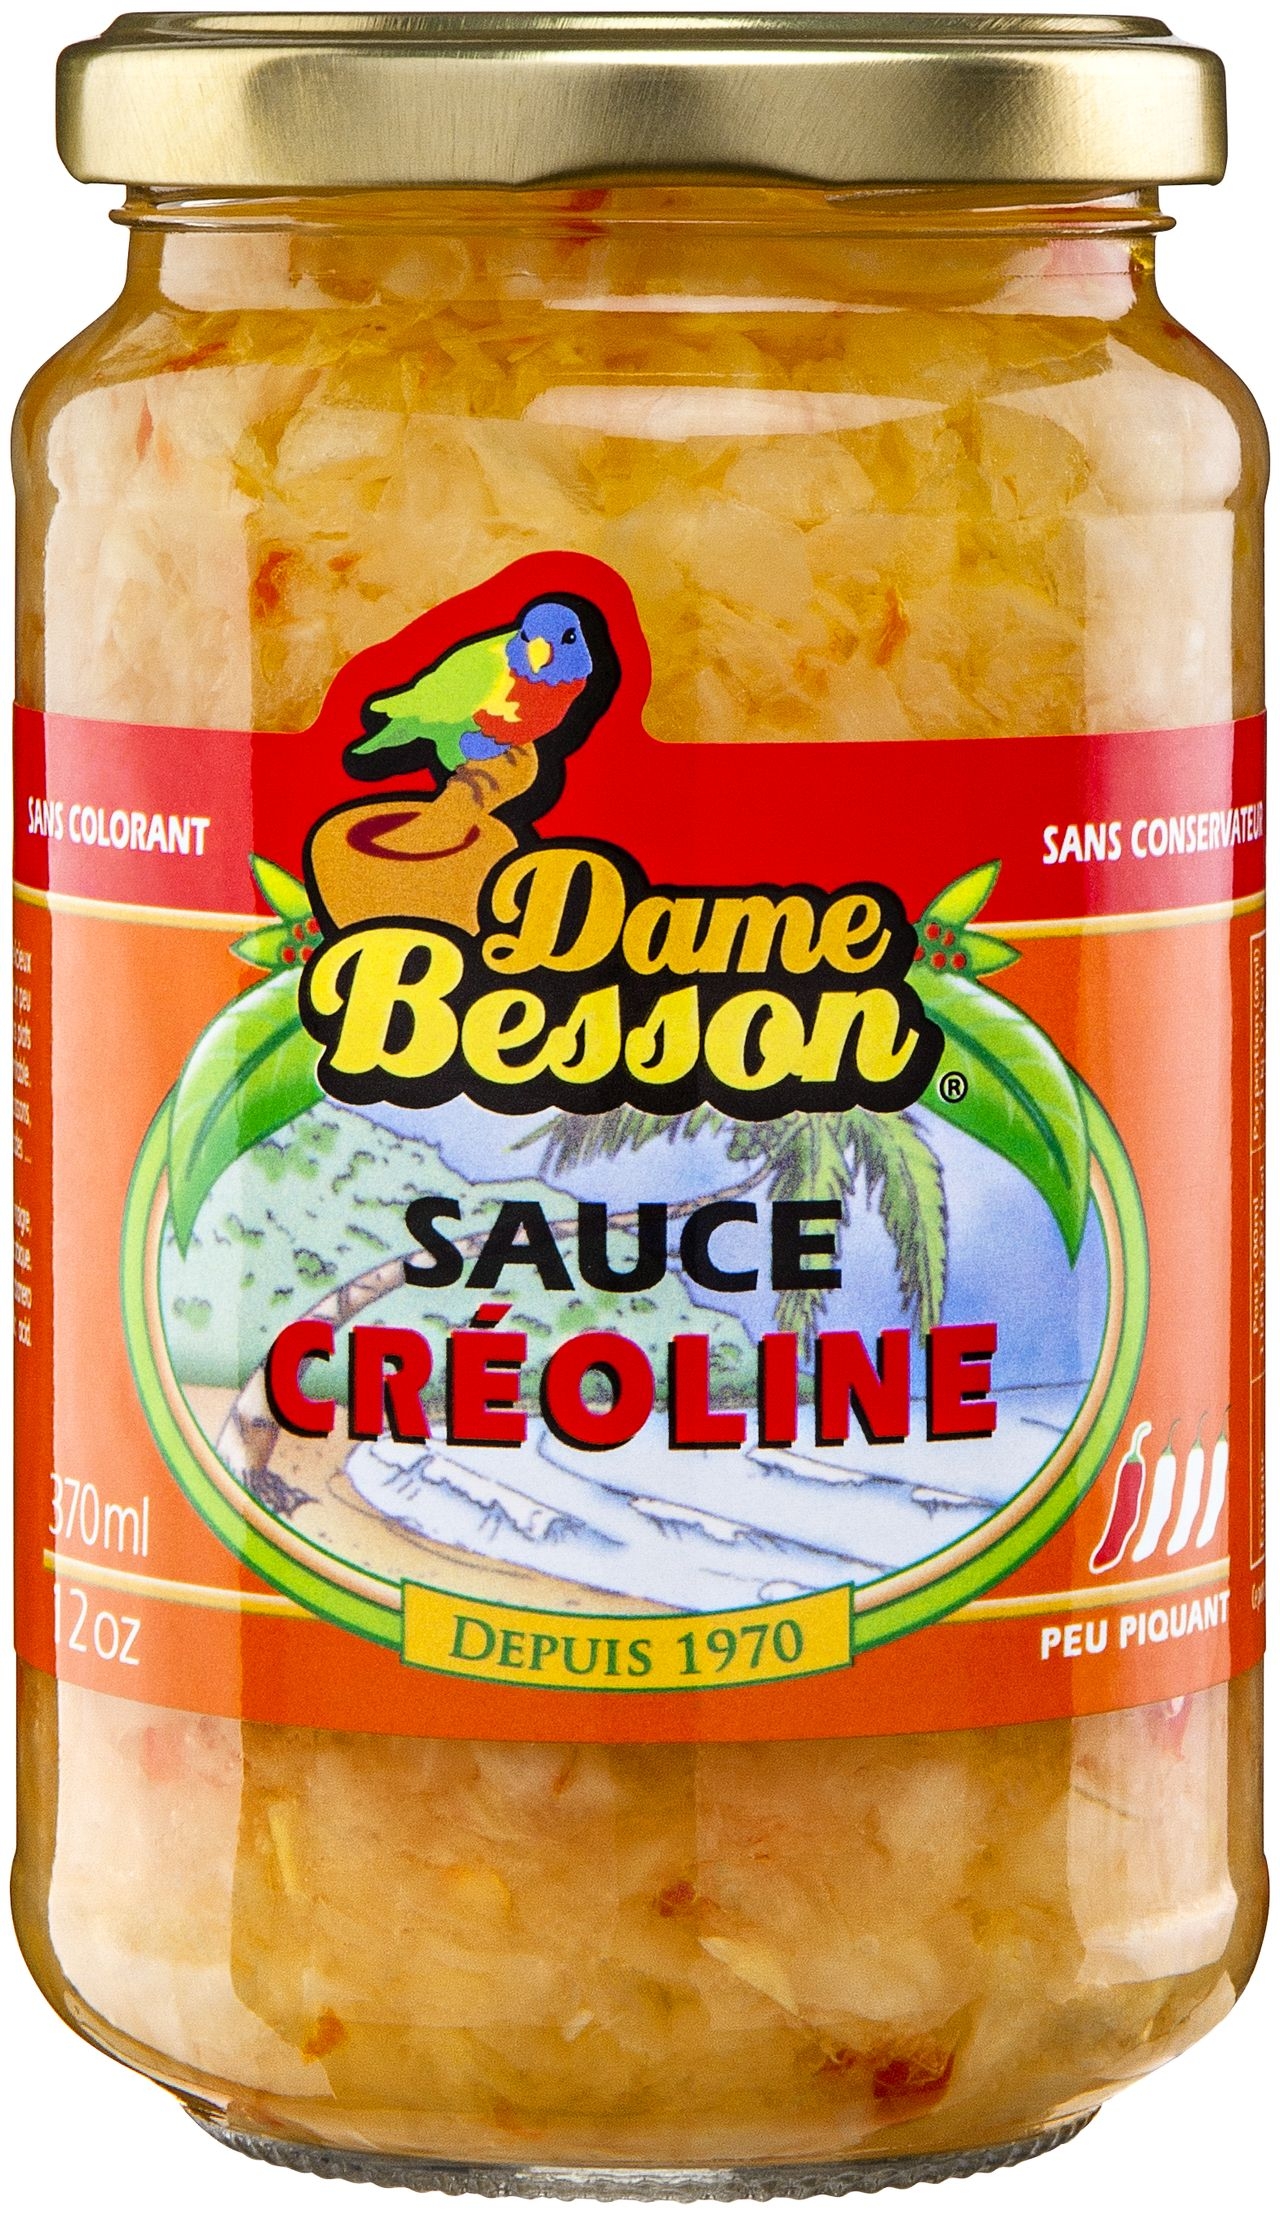 Sauce créoline - Dame besson - 57cl